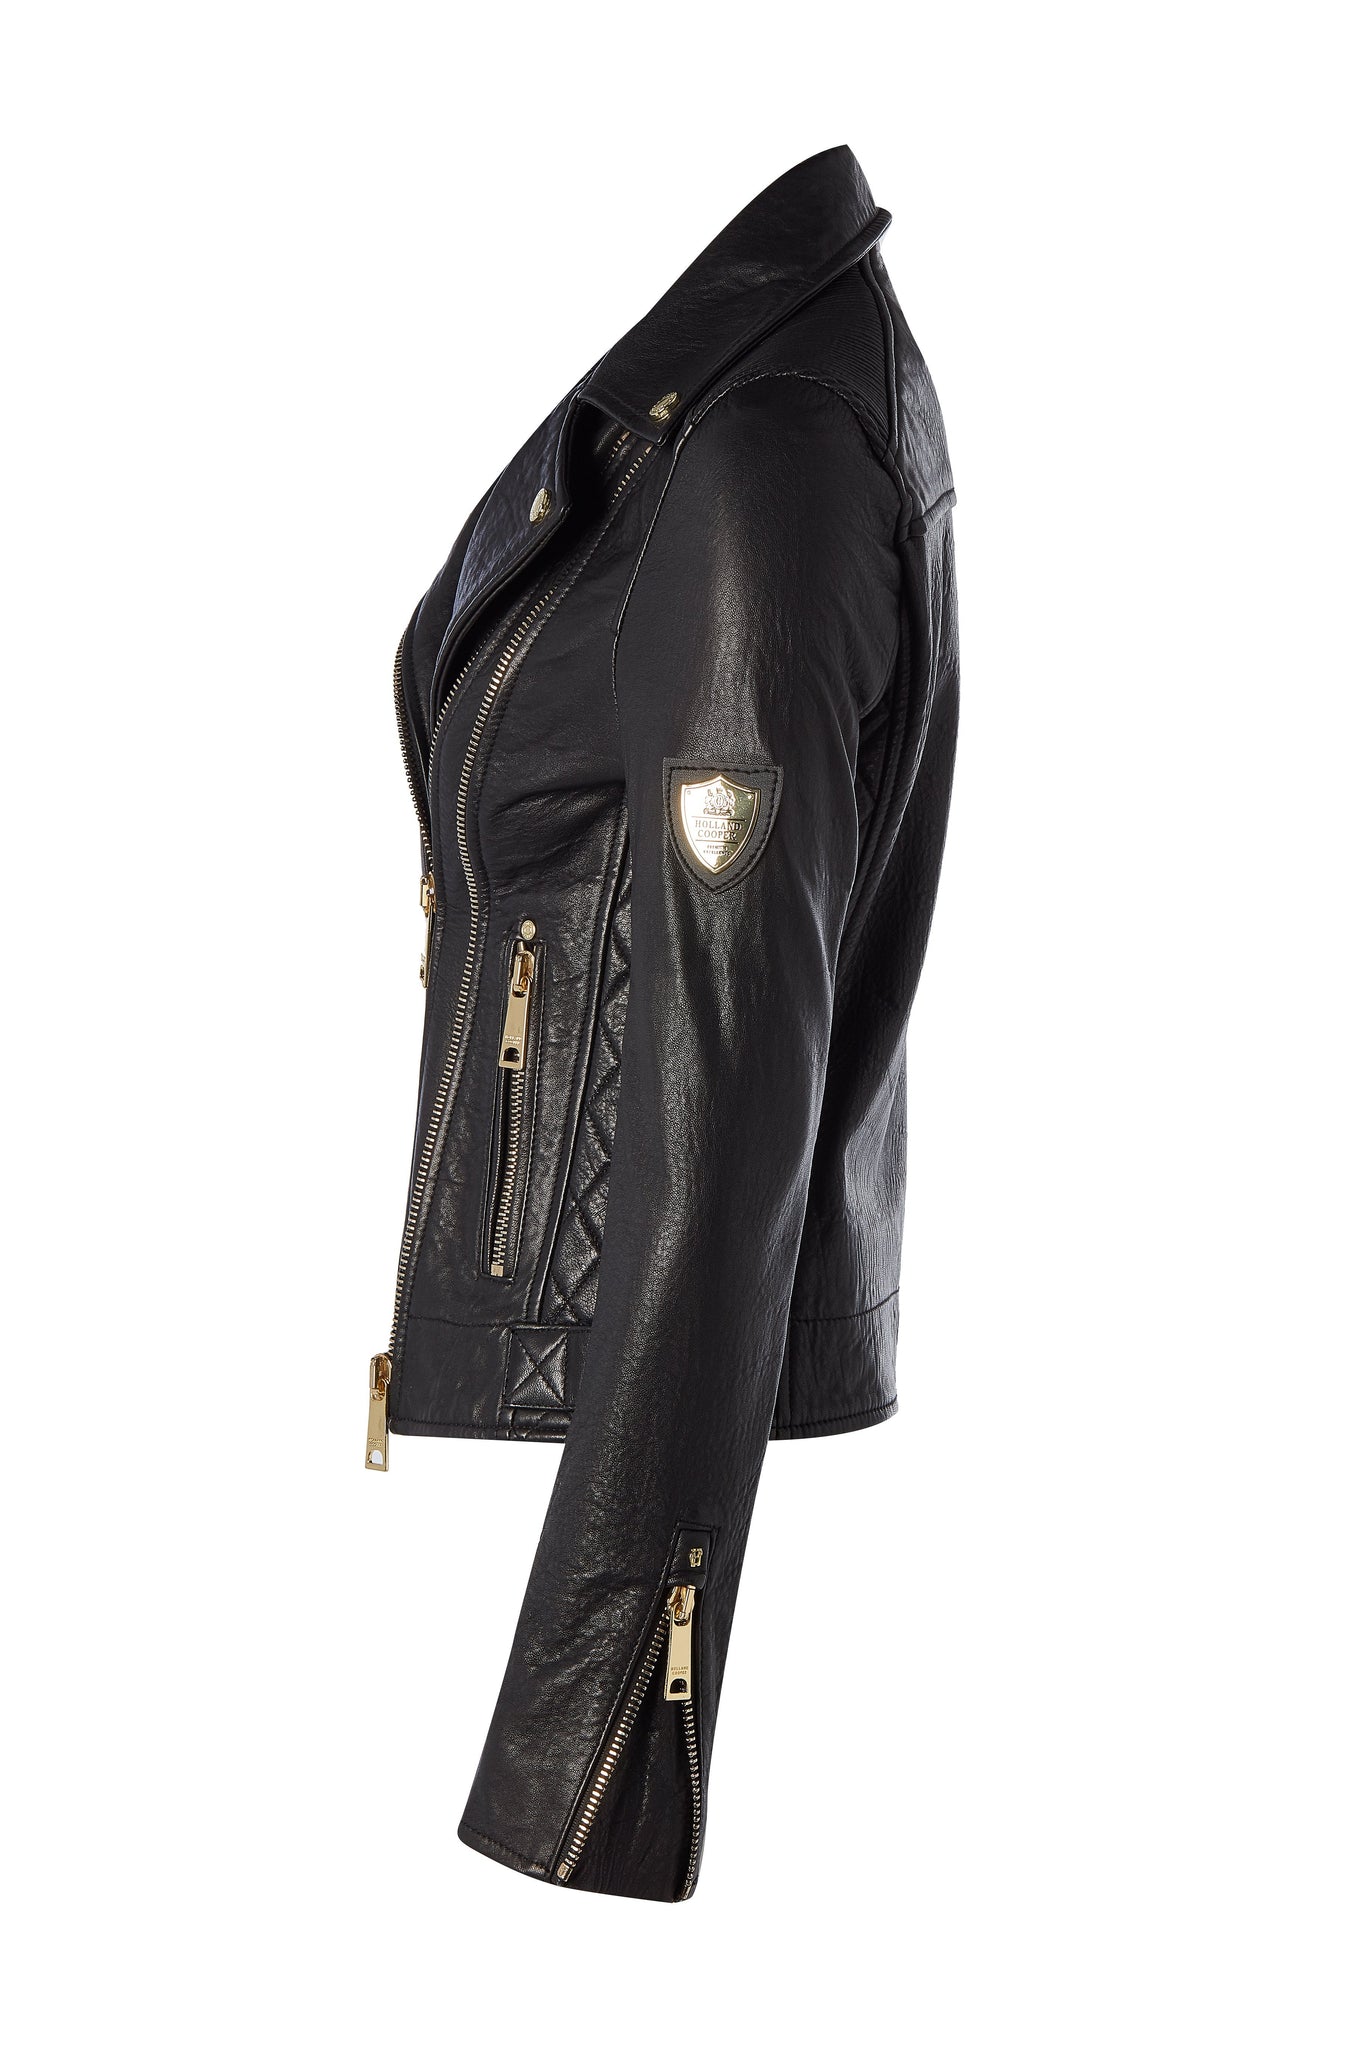 Leather Biker Jacket (Black)